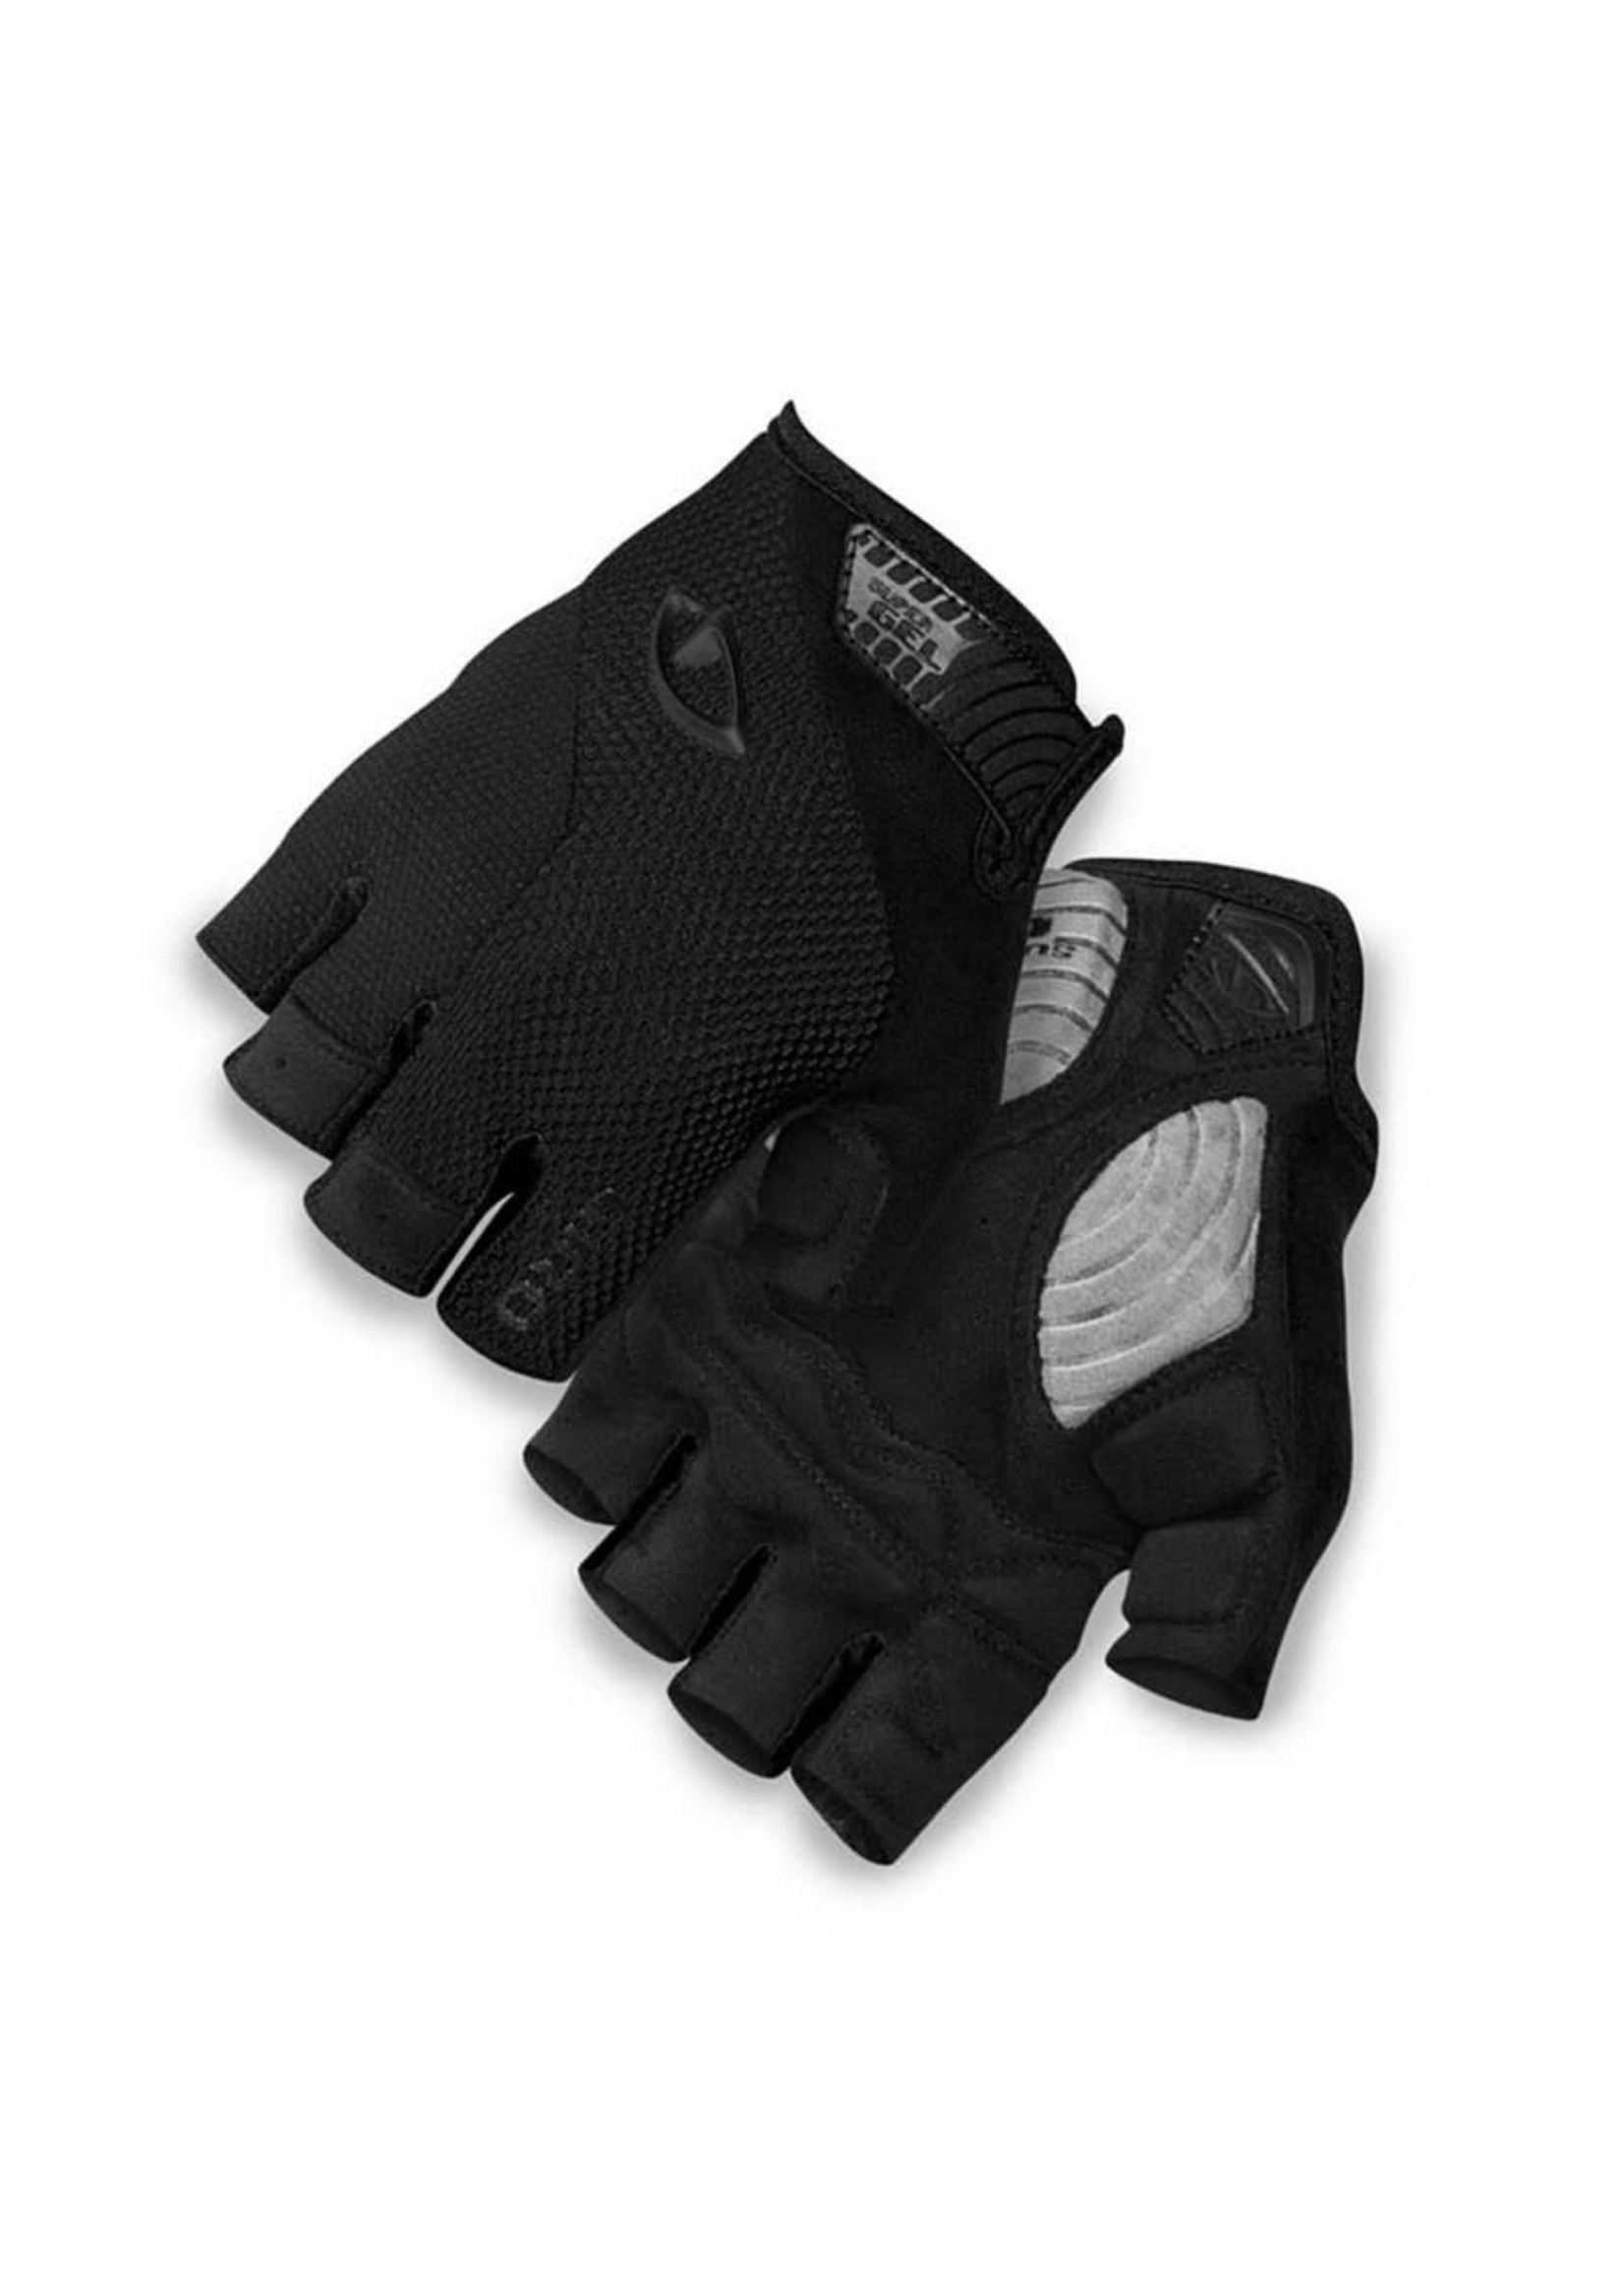 GIRO Gloves Giro Stradedure Supergel Black